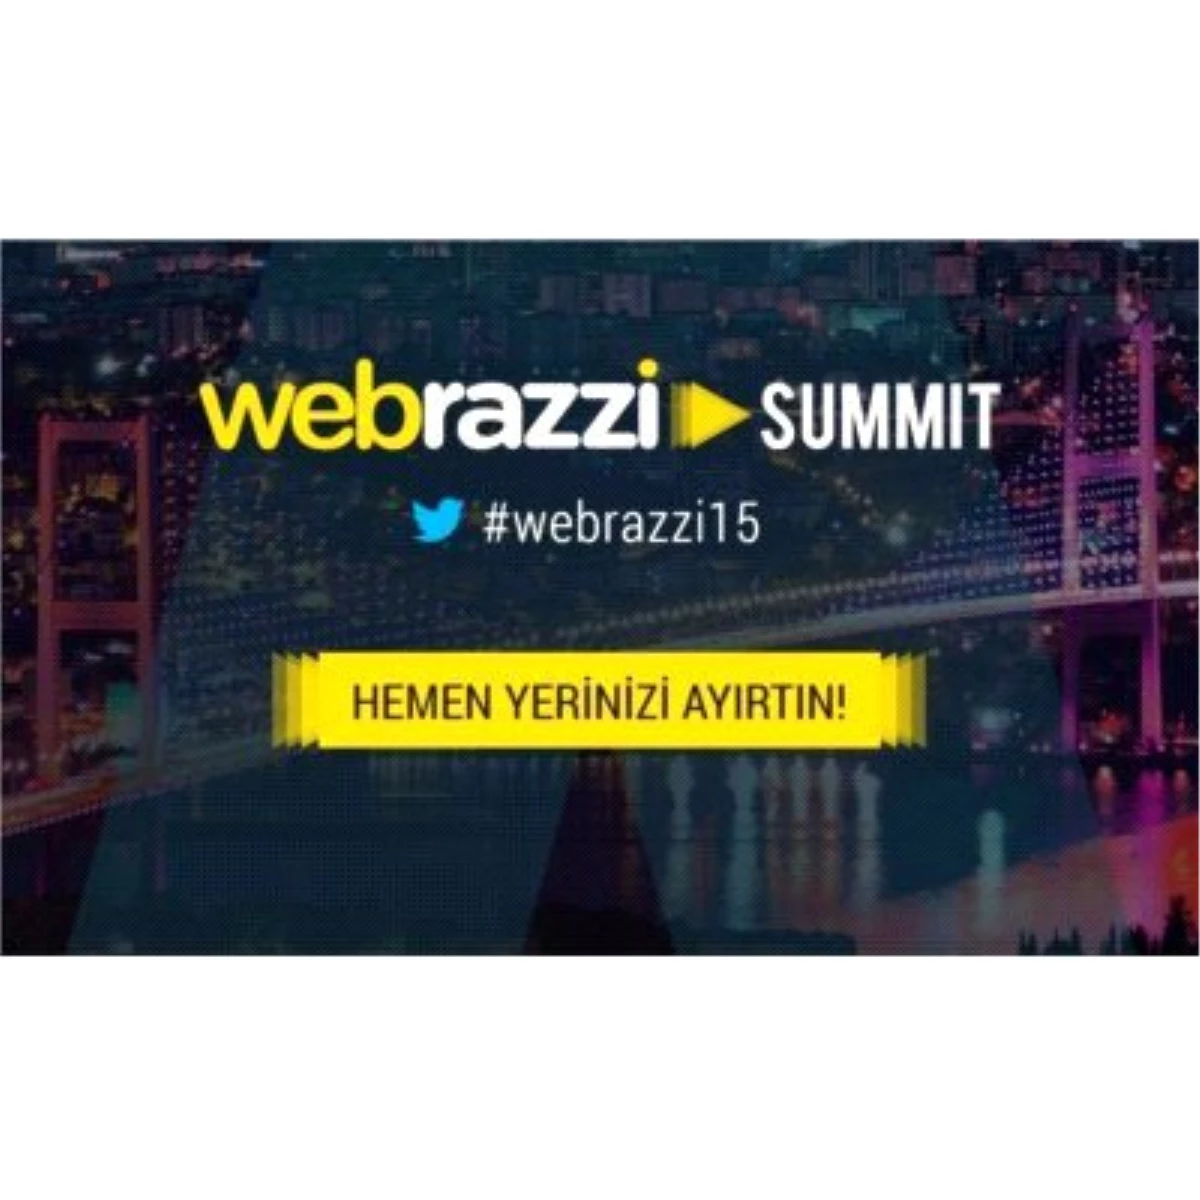 Webrazzi Summit Yeni Konuşmacılarını Duyurdu